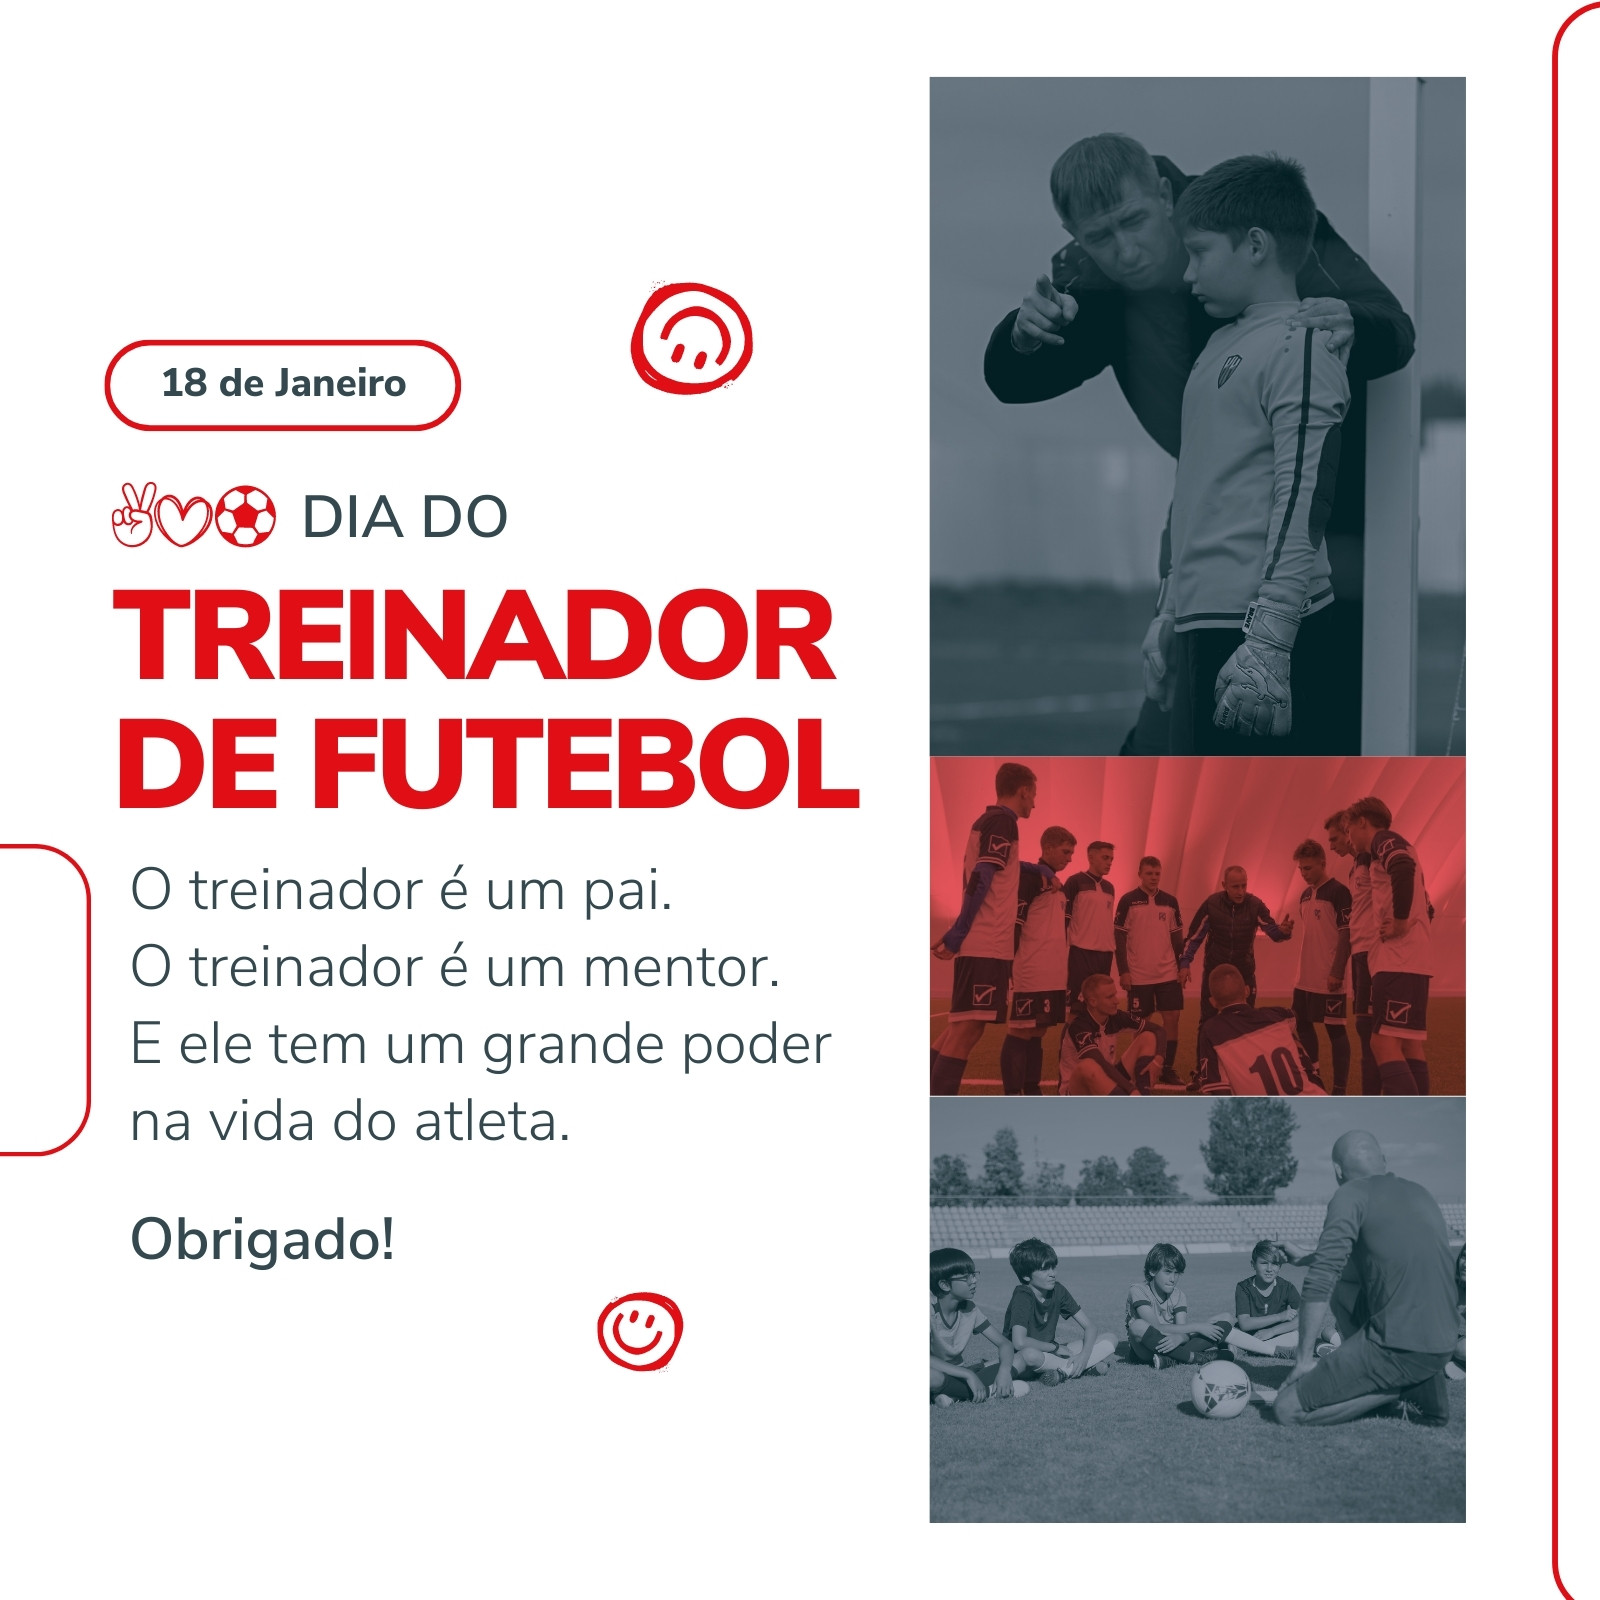 Modelo de postagem de instagram em mídia social de dia de jogos de futebol